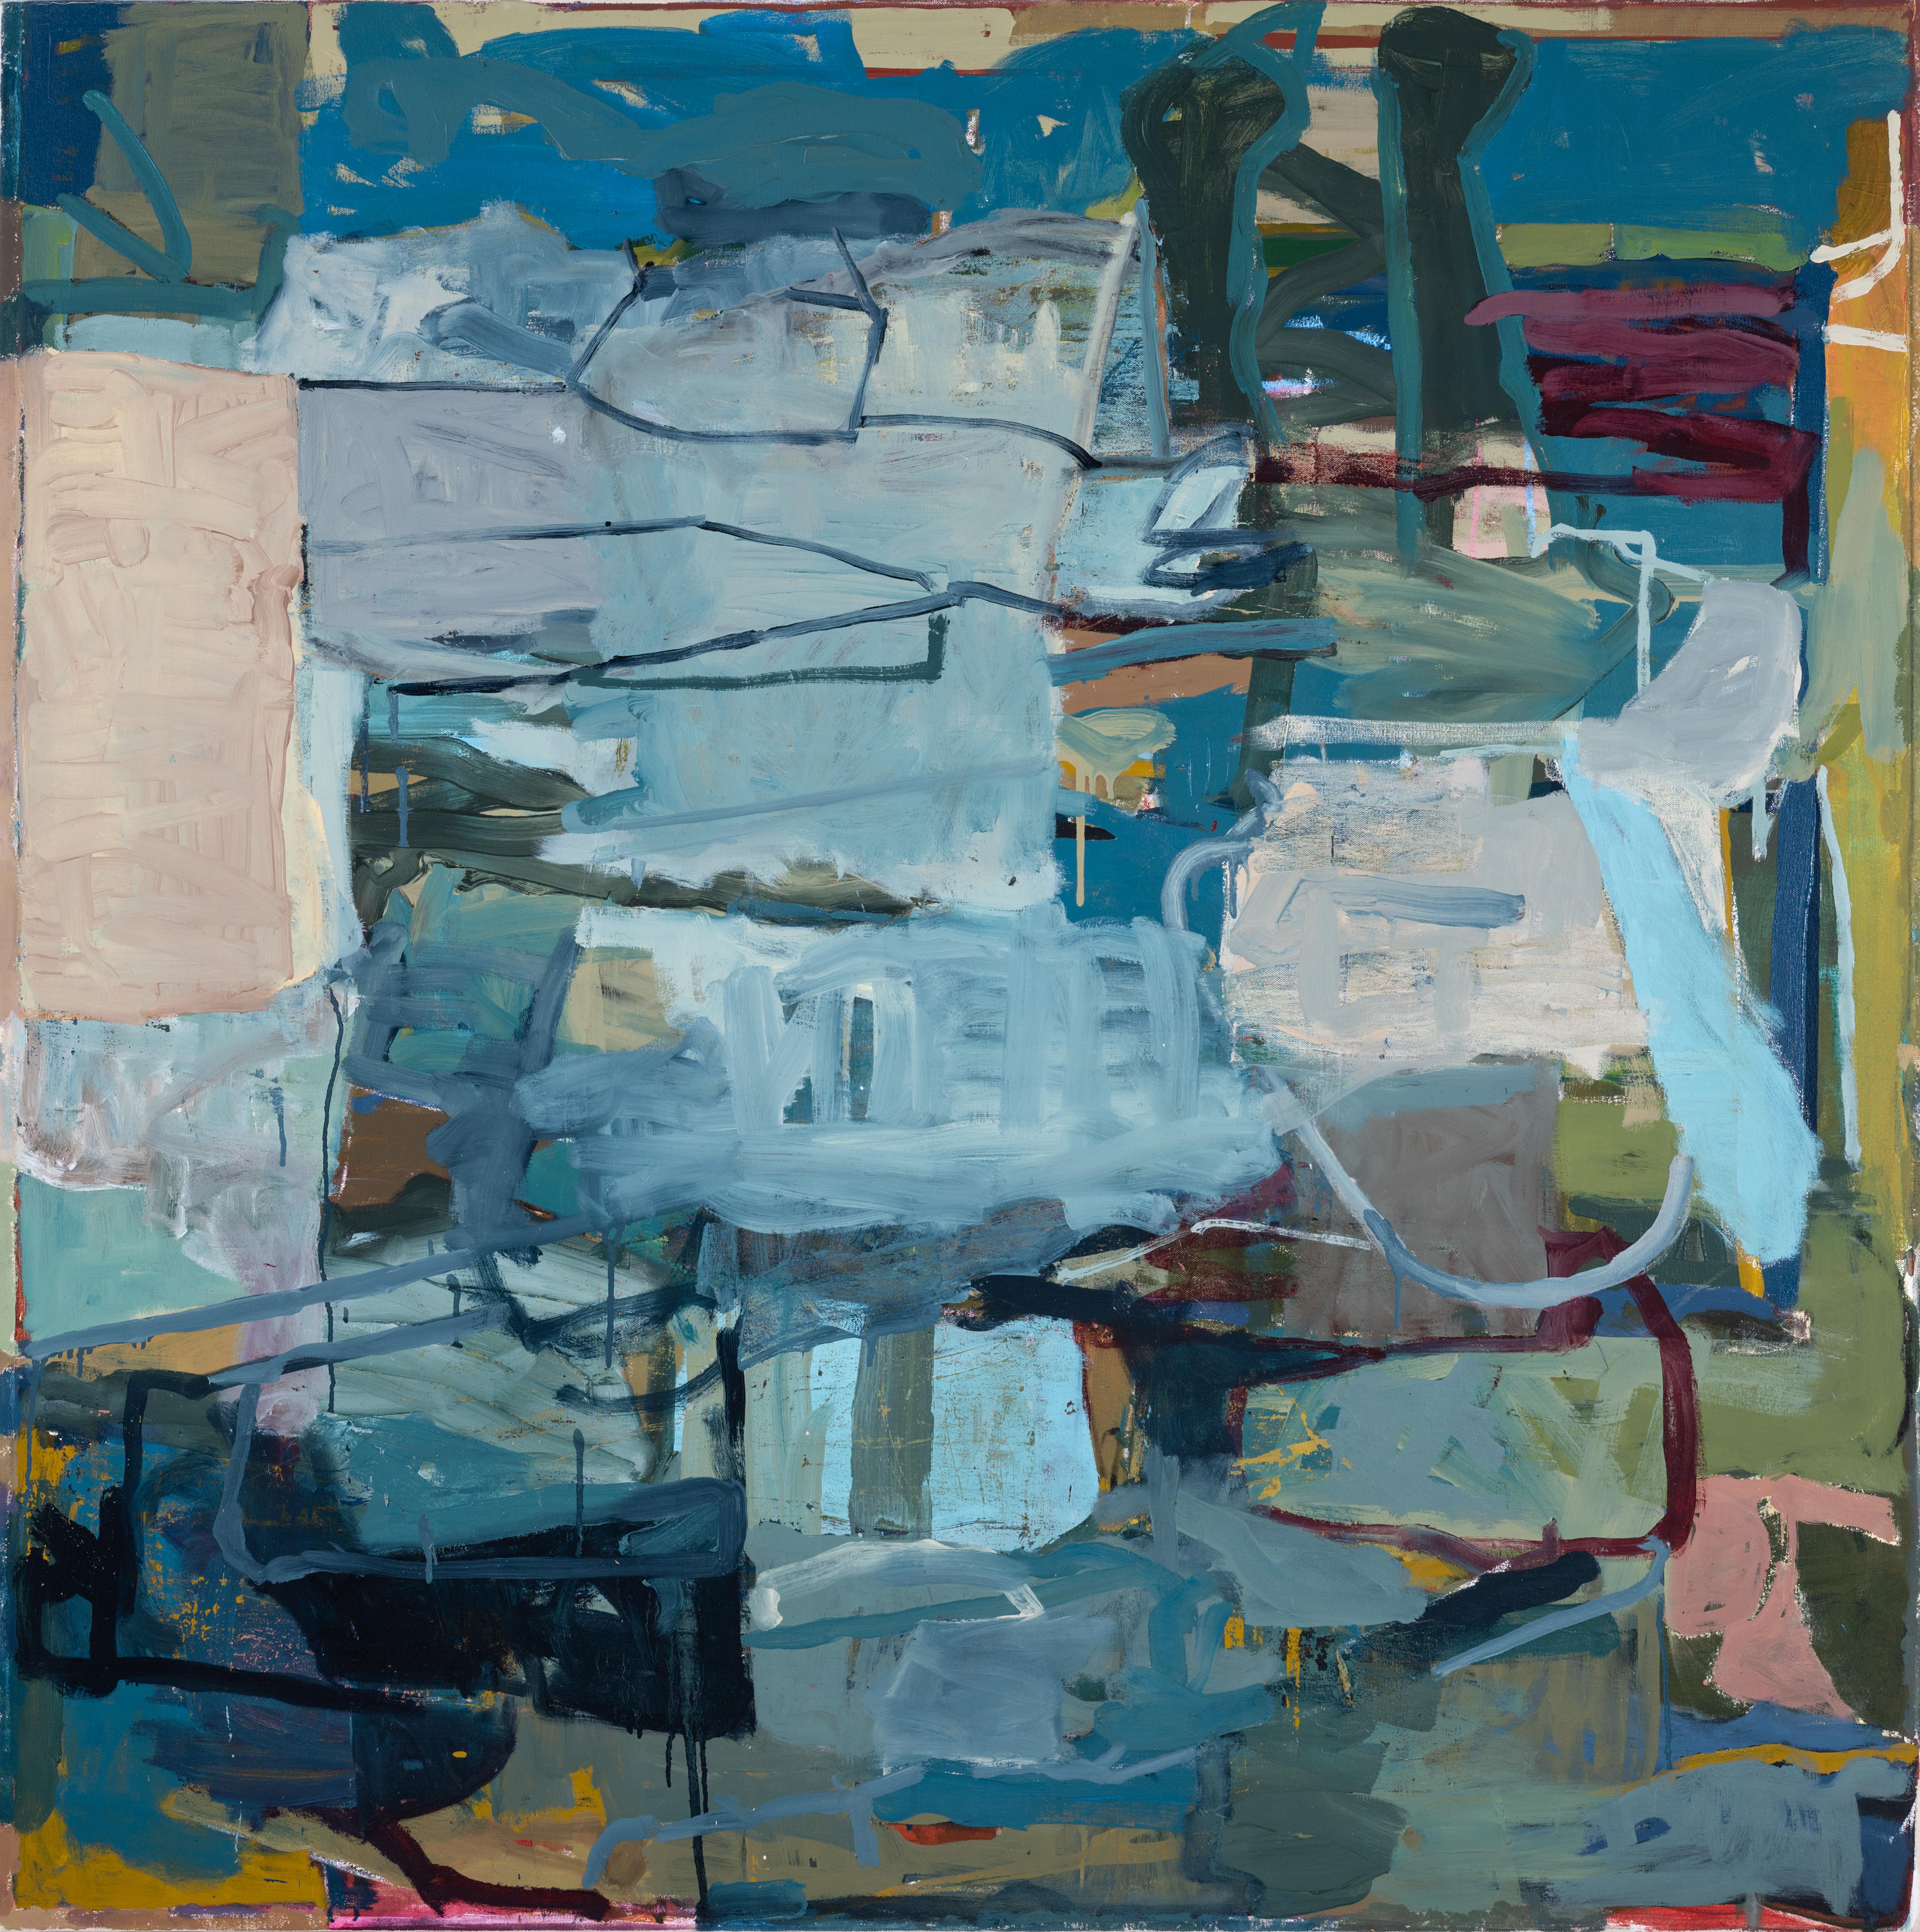 James O'Shea Abstract Painting – Acreage (Abstraktes expressionistisches Gemälde in Blau- und Taupetönen, Öl auf Leinwand)